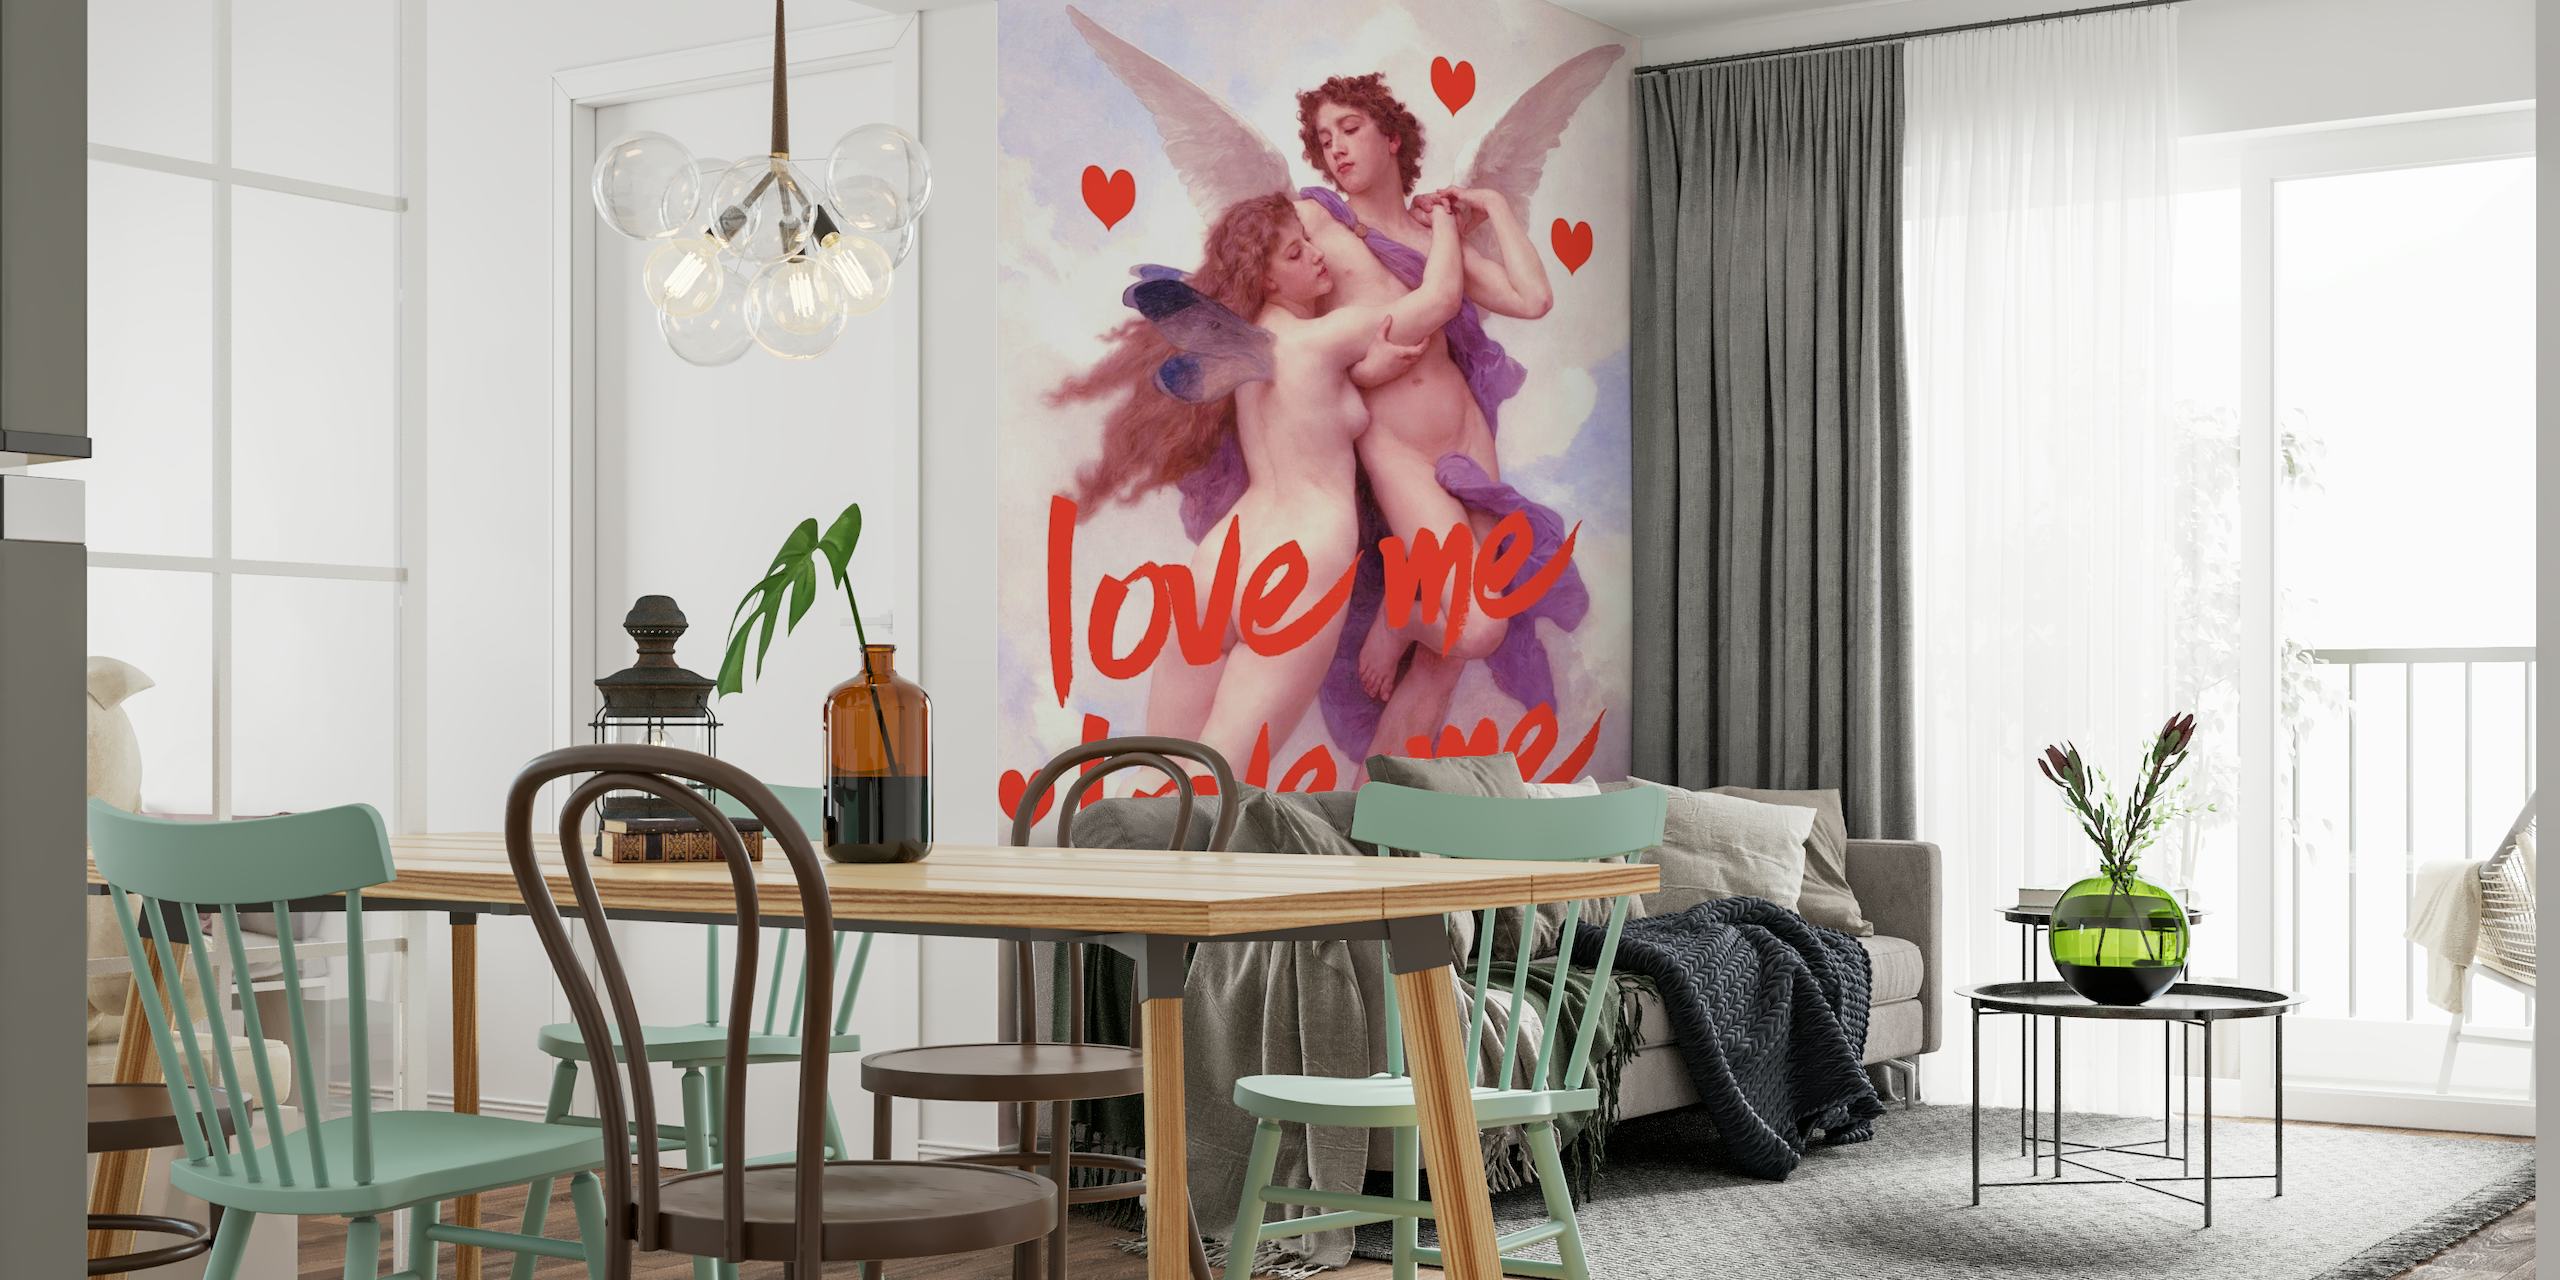 Romantisches Love Angel-Wandbild mit Engeln und Herzen